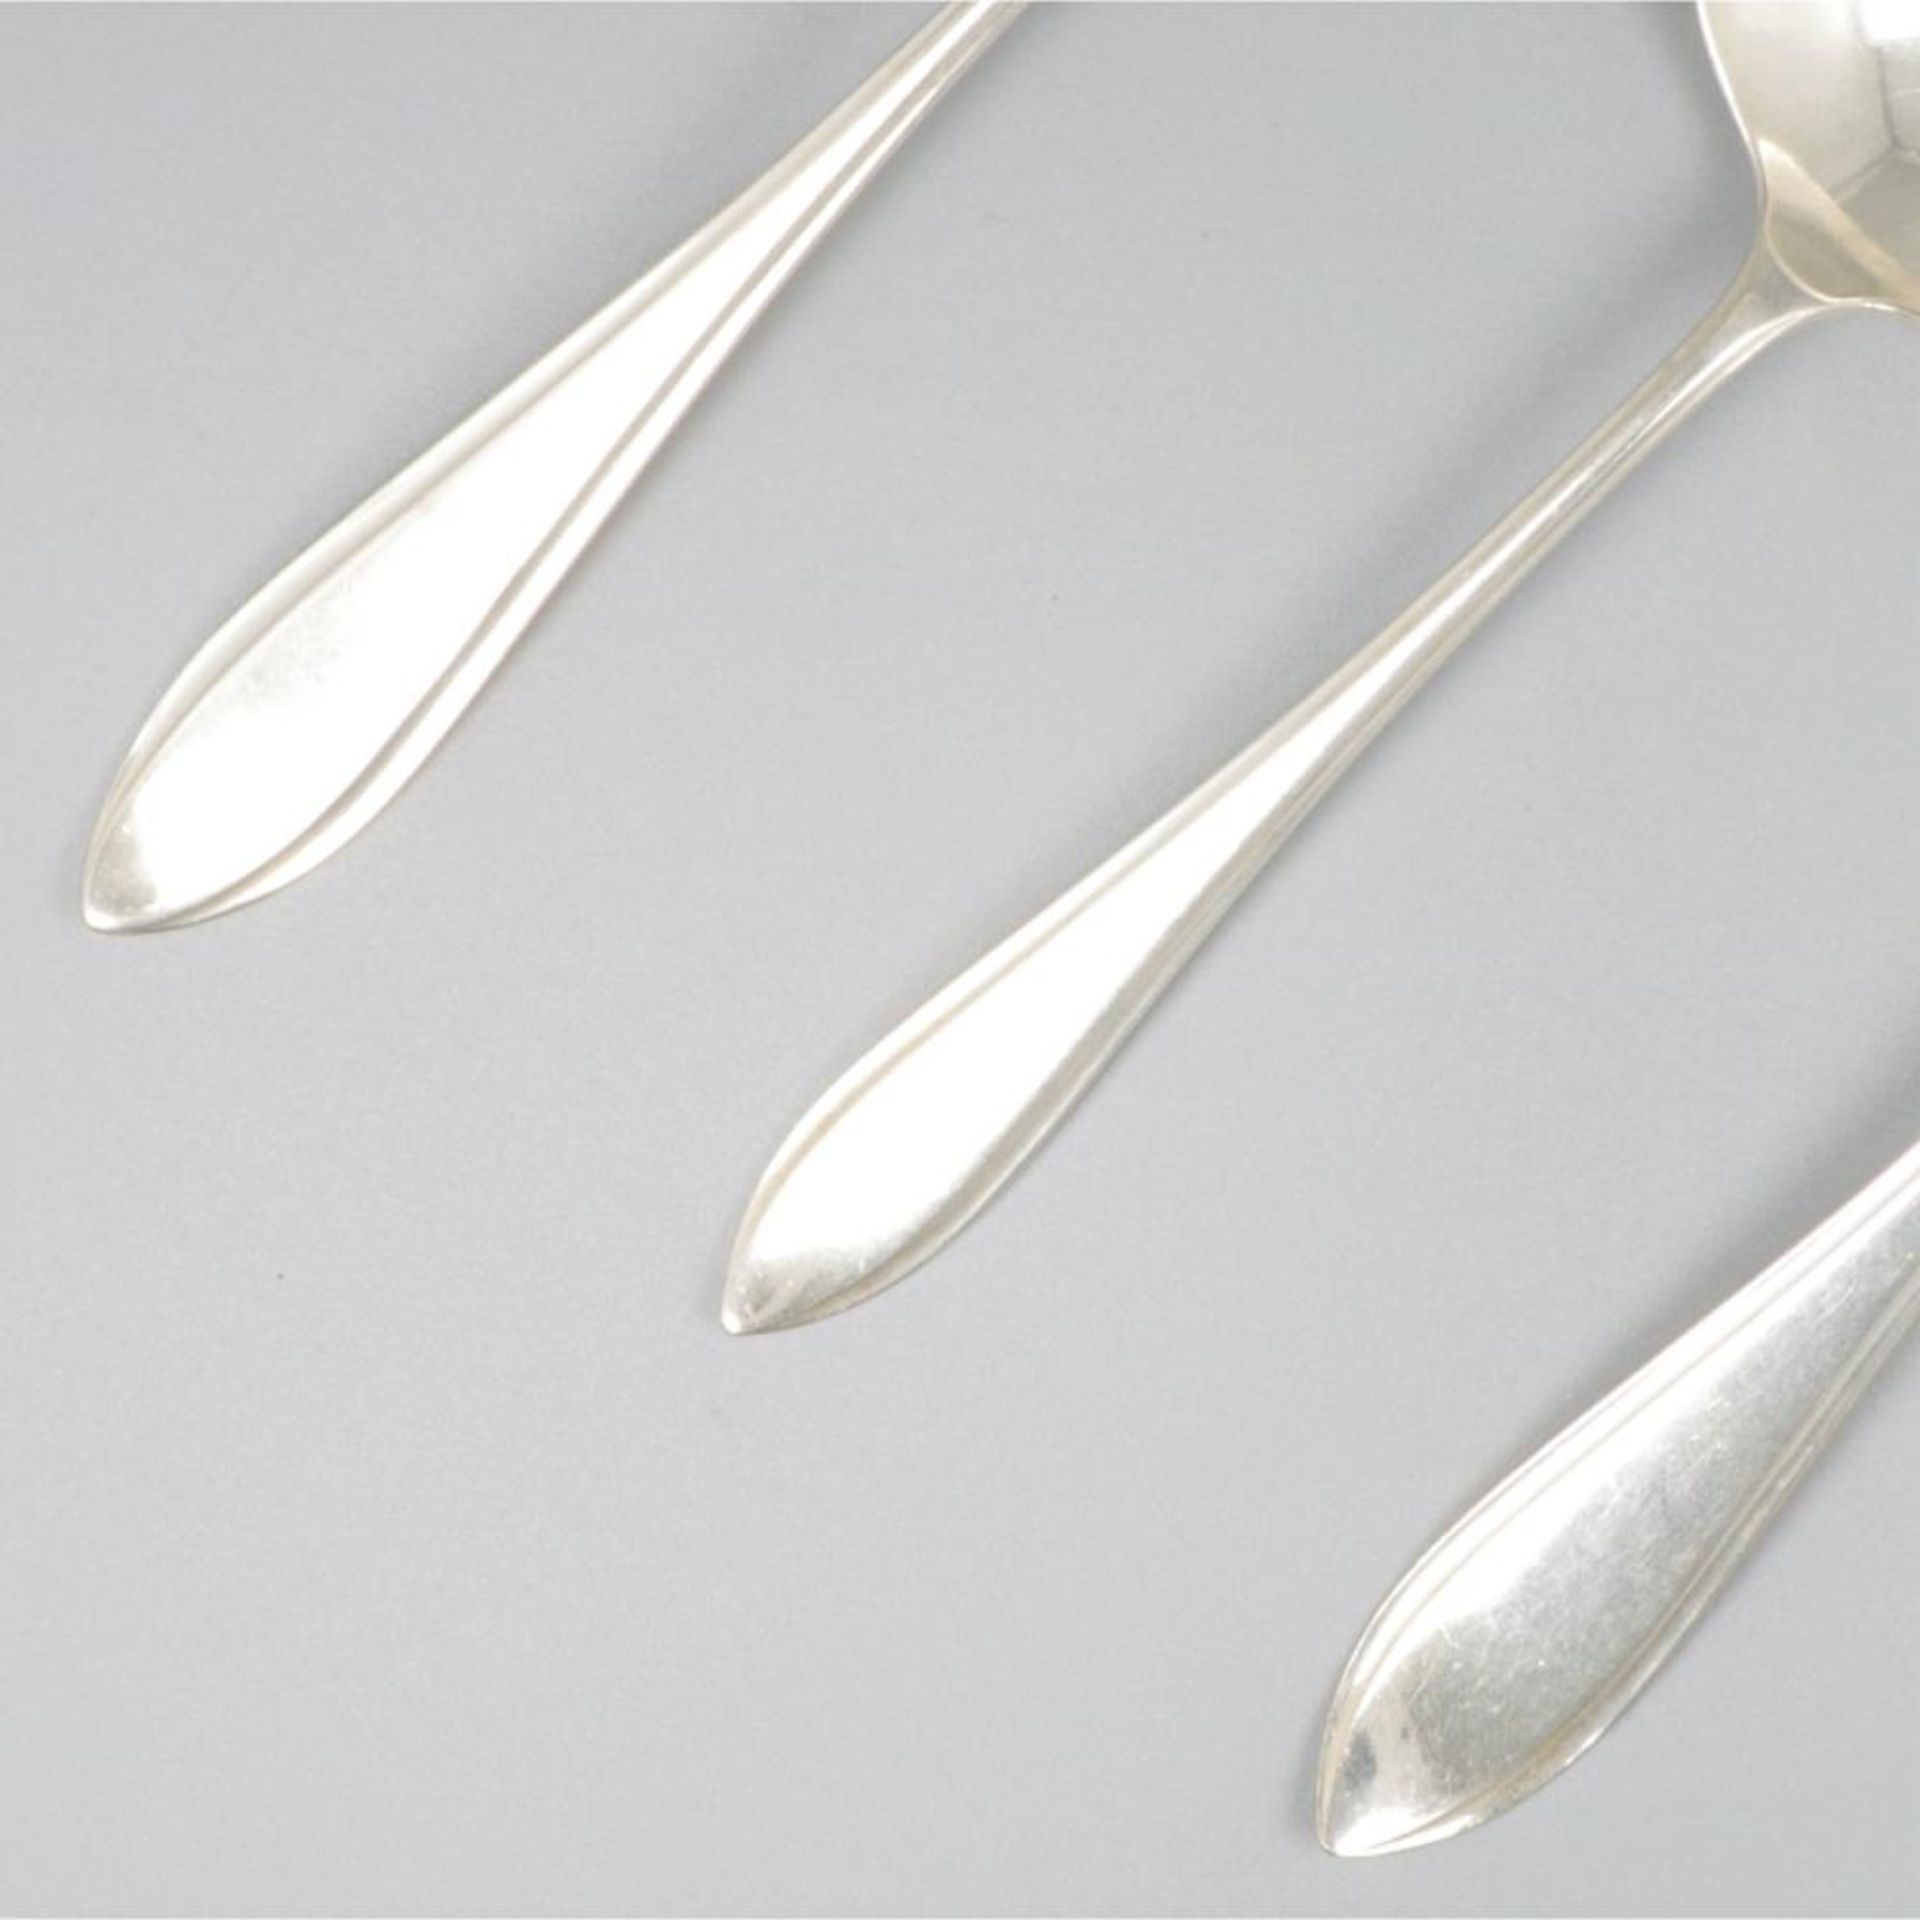 3-piece set of ladles "Hollands Puntfilet" silver. - Bild 3 aus 7